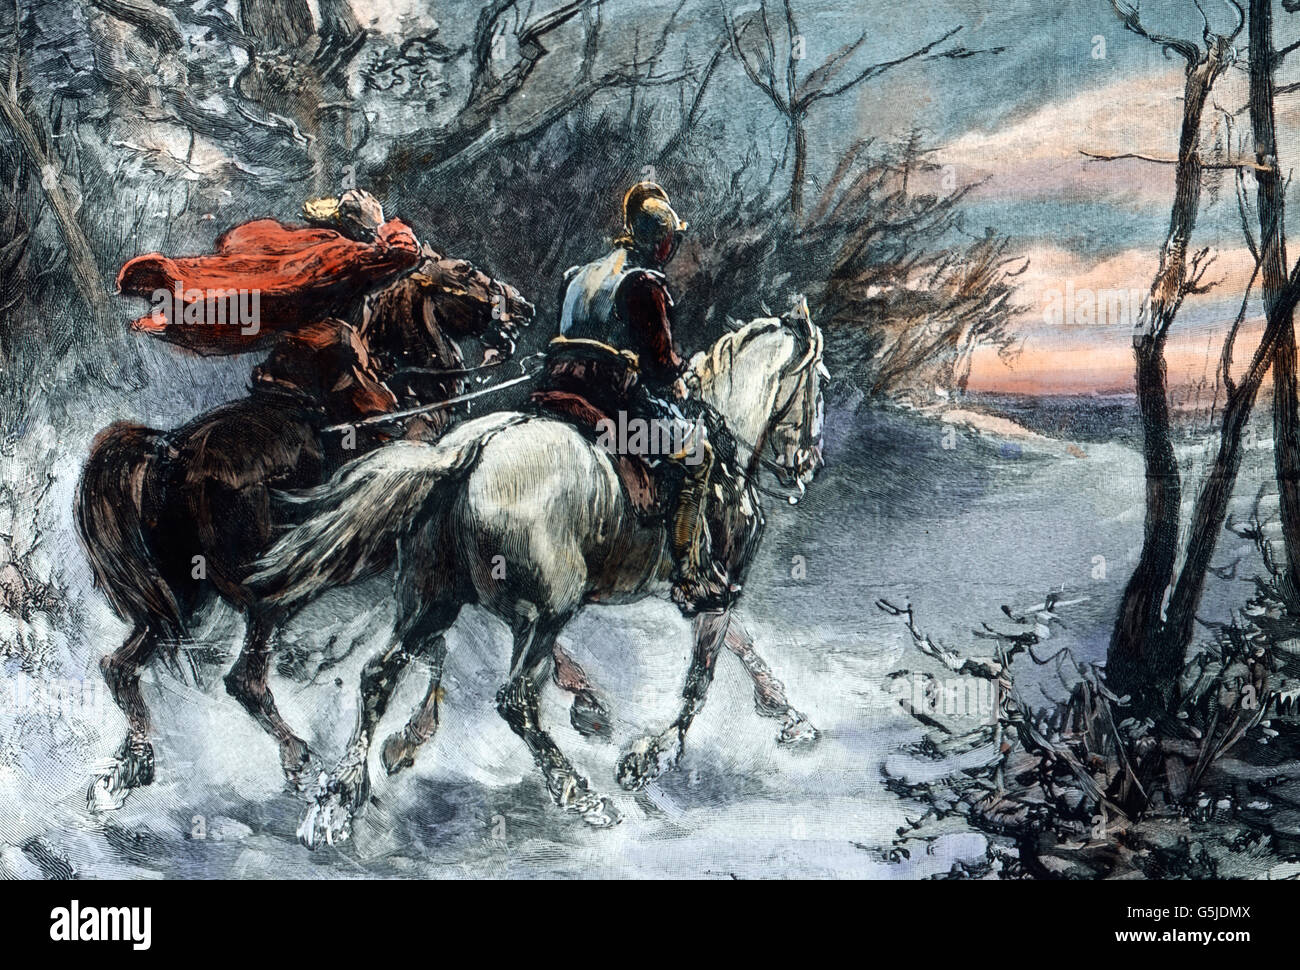 Zwei Reiter Im Dreißigjährigen Krieg, 17. Halbmonatsschrift. Zwei Ritter auf ihren Pferden im Dreißigjährigen Krieg, 17. Jahrhundert. Stockfoto